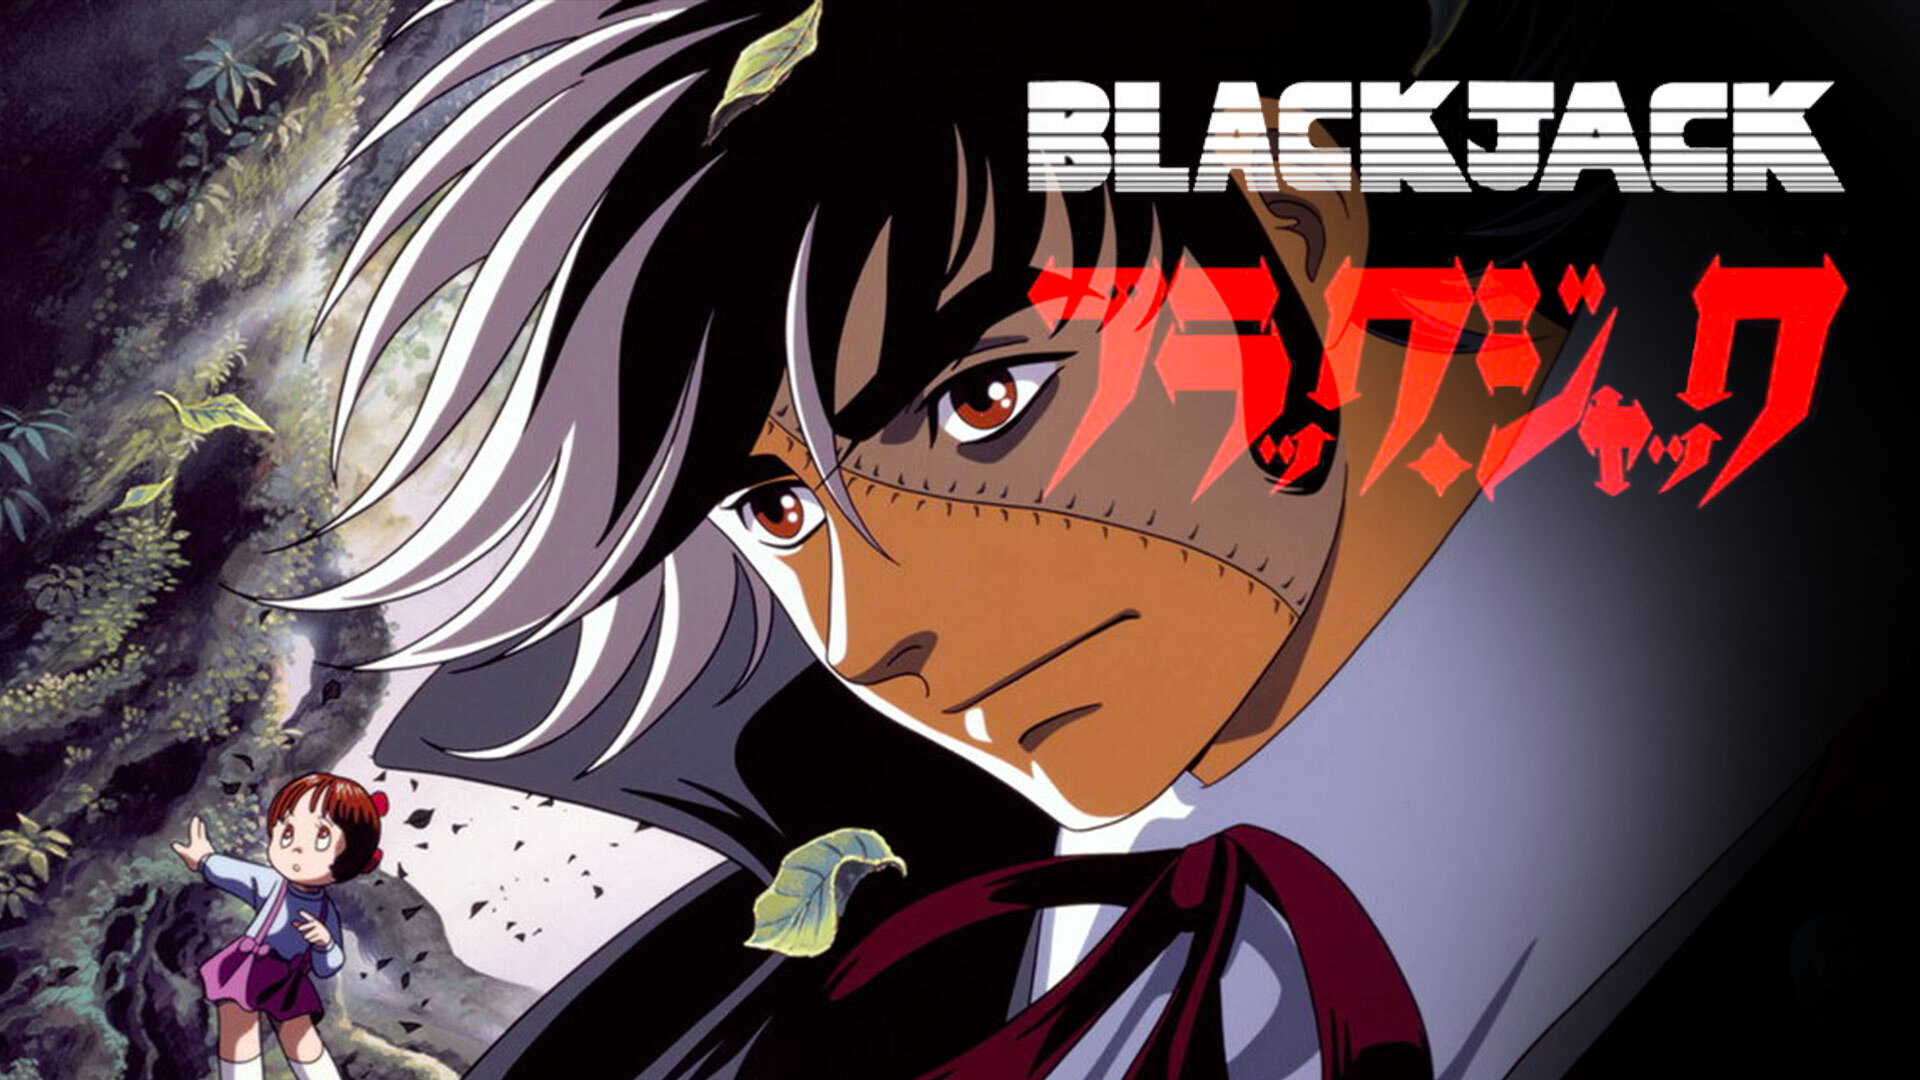  En qué orden ver Black Jack incluyendo OVAs y Películas 2023